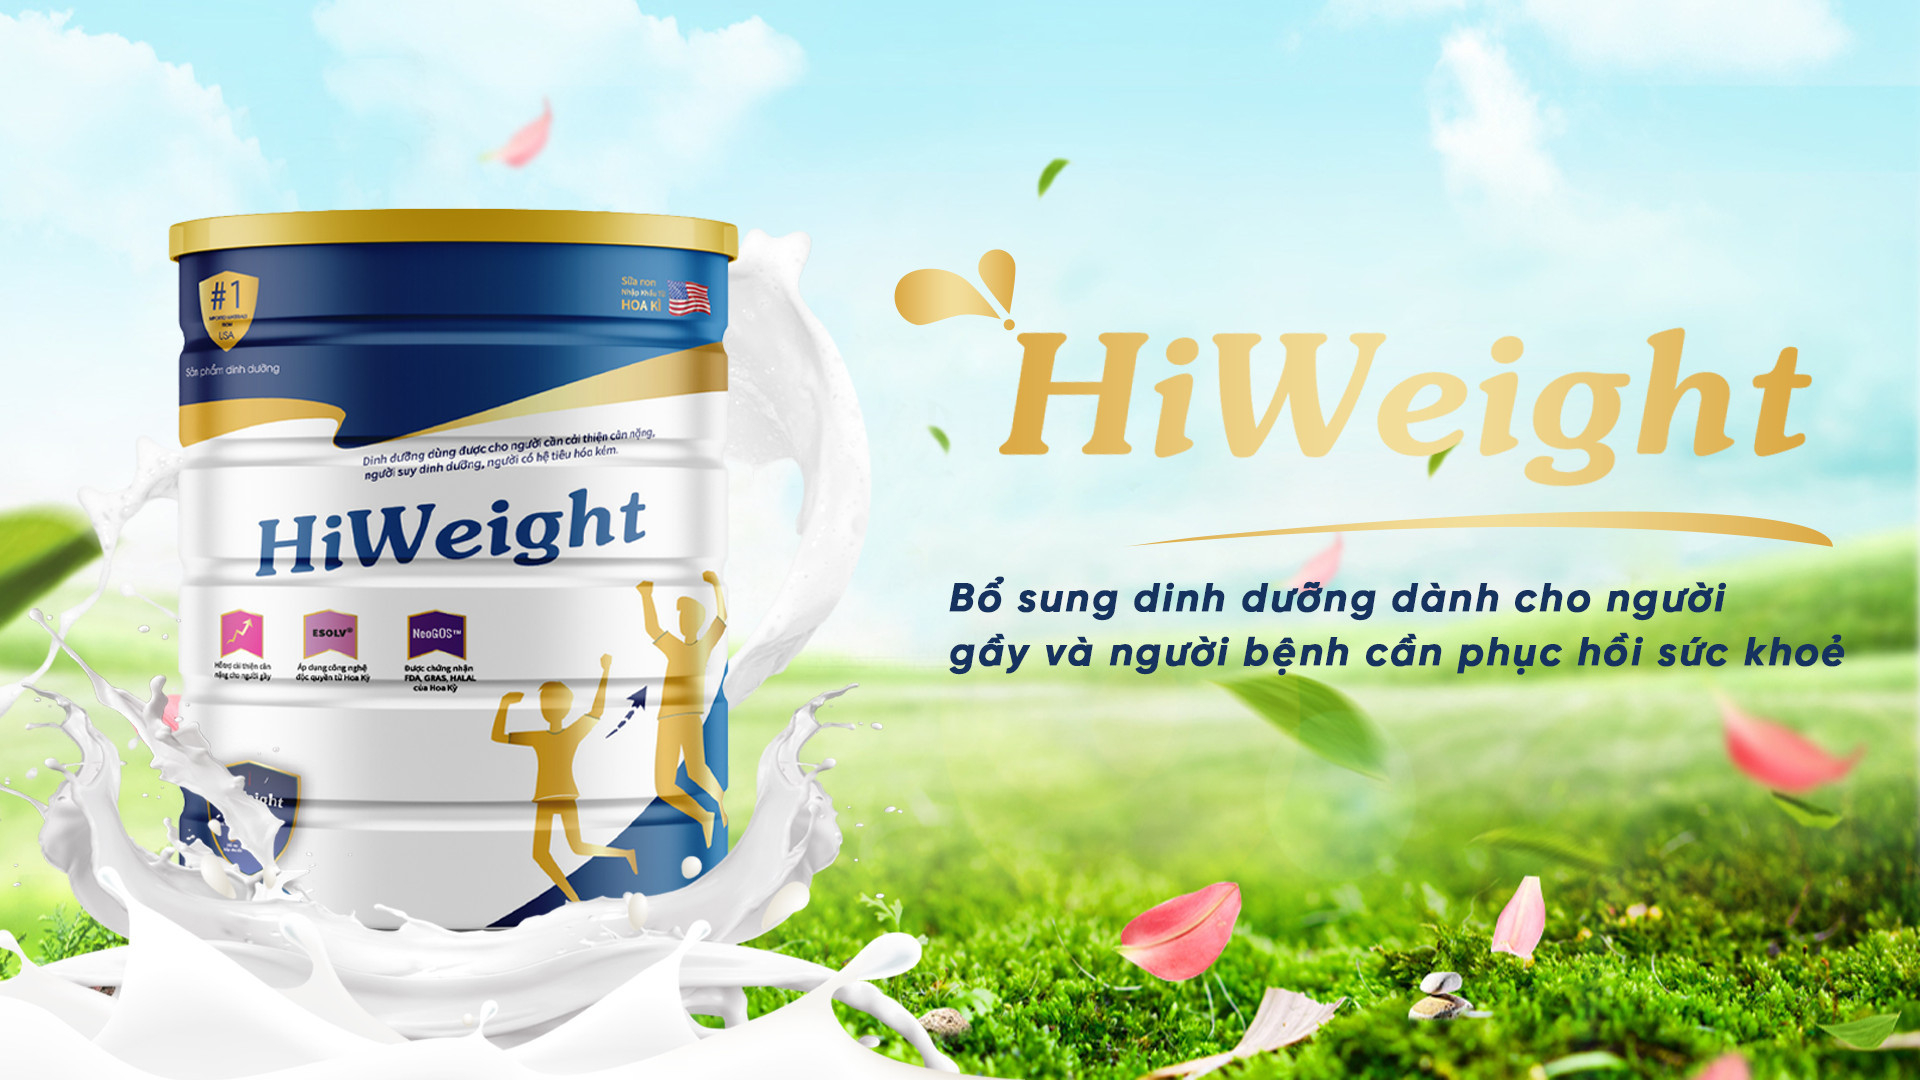 Sữa non HiWeight - Giải pháp bổ sung dinh dưỡng hiệu quả